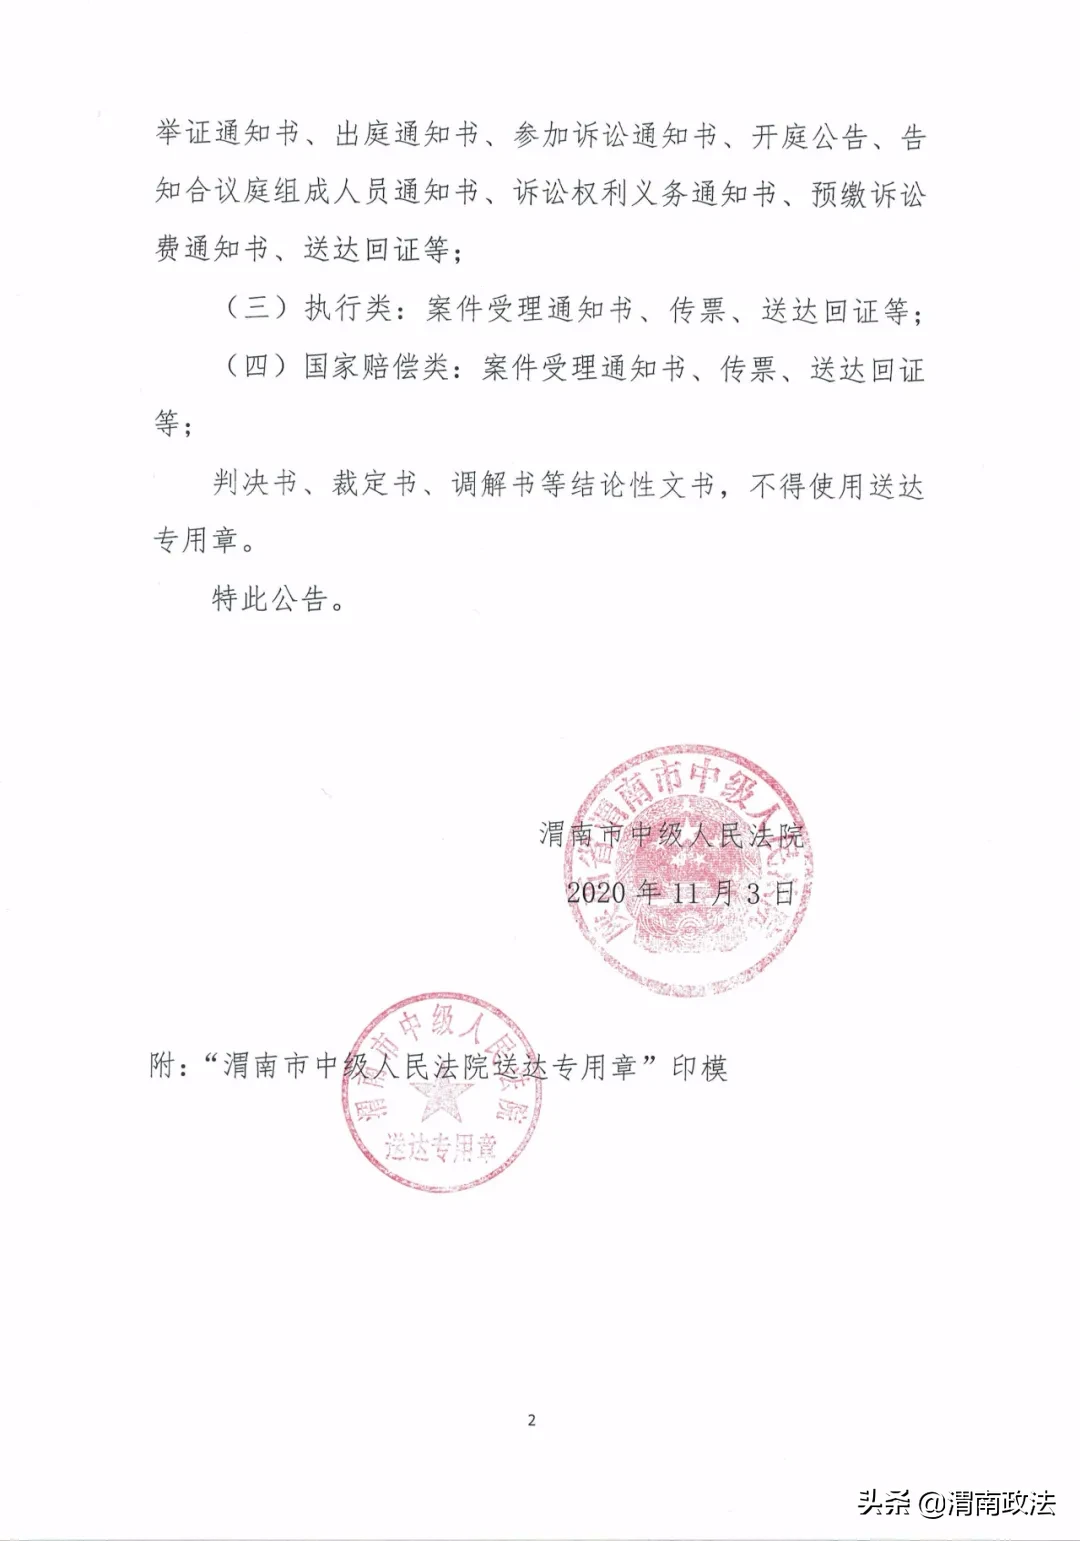 公告 | 渭南市中级人民法院启用“送达专用章”